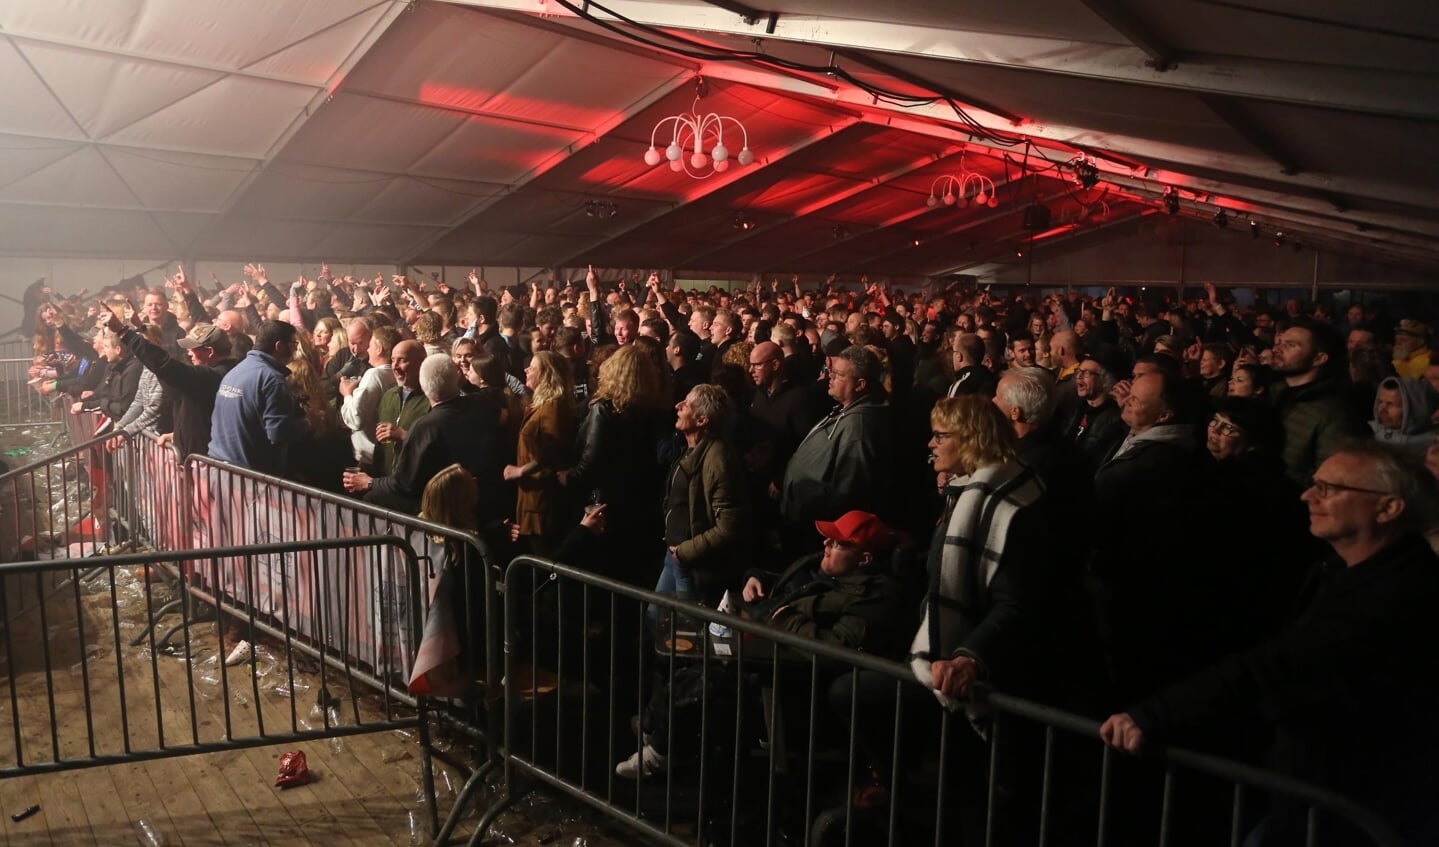 Veel feestgangers in de tent bij De Tol. Foto: Achterhoekfoto.nl/Albert Schreuder